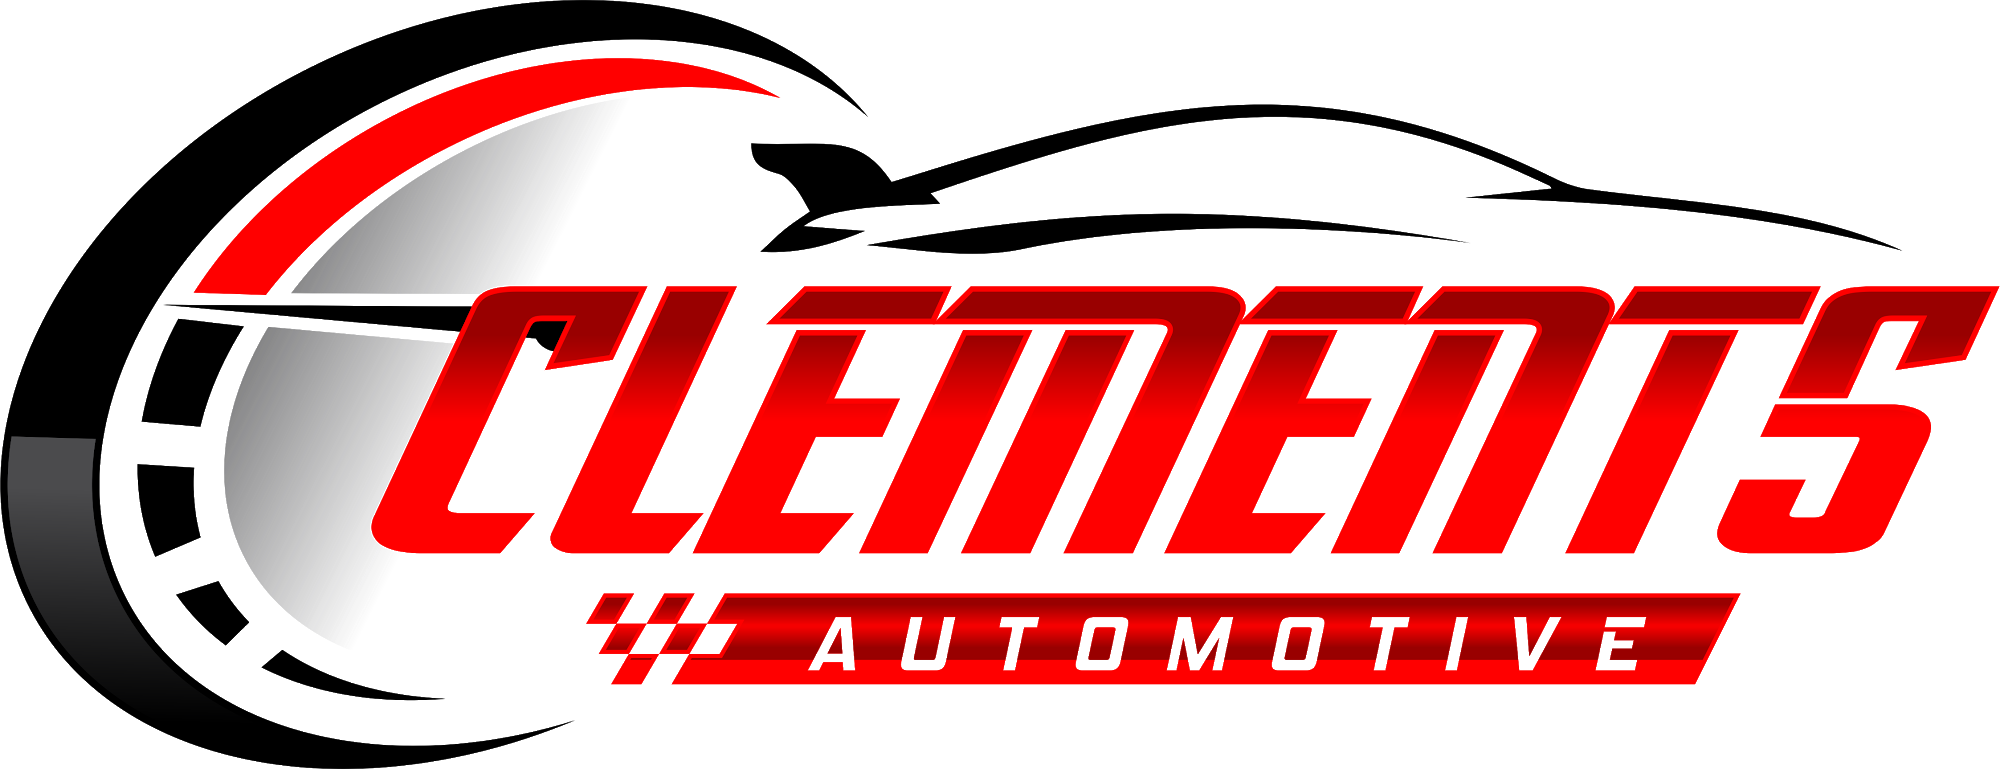 Clements Automotive